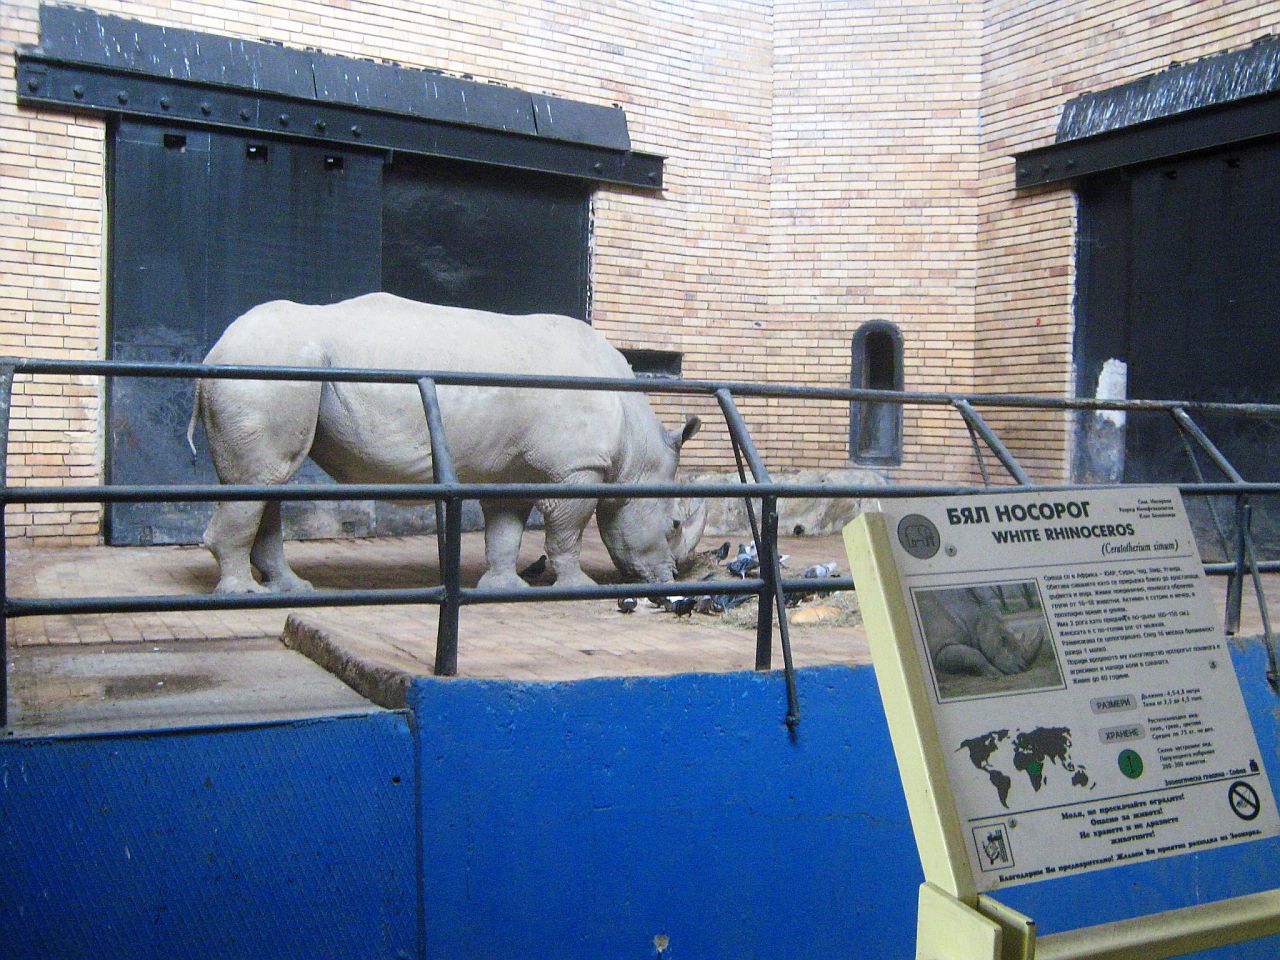 Носорог в зоопарке